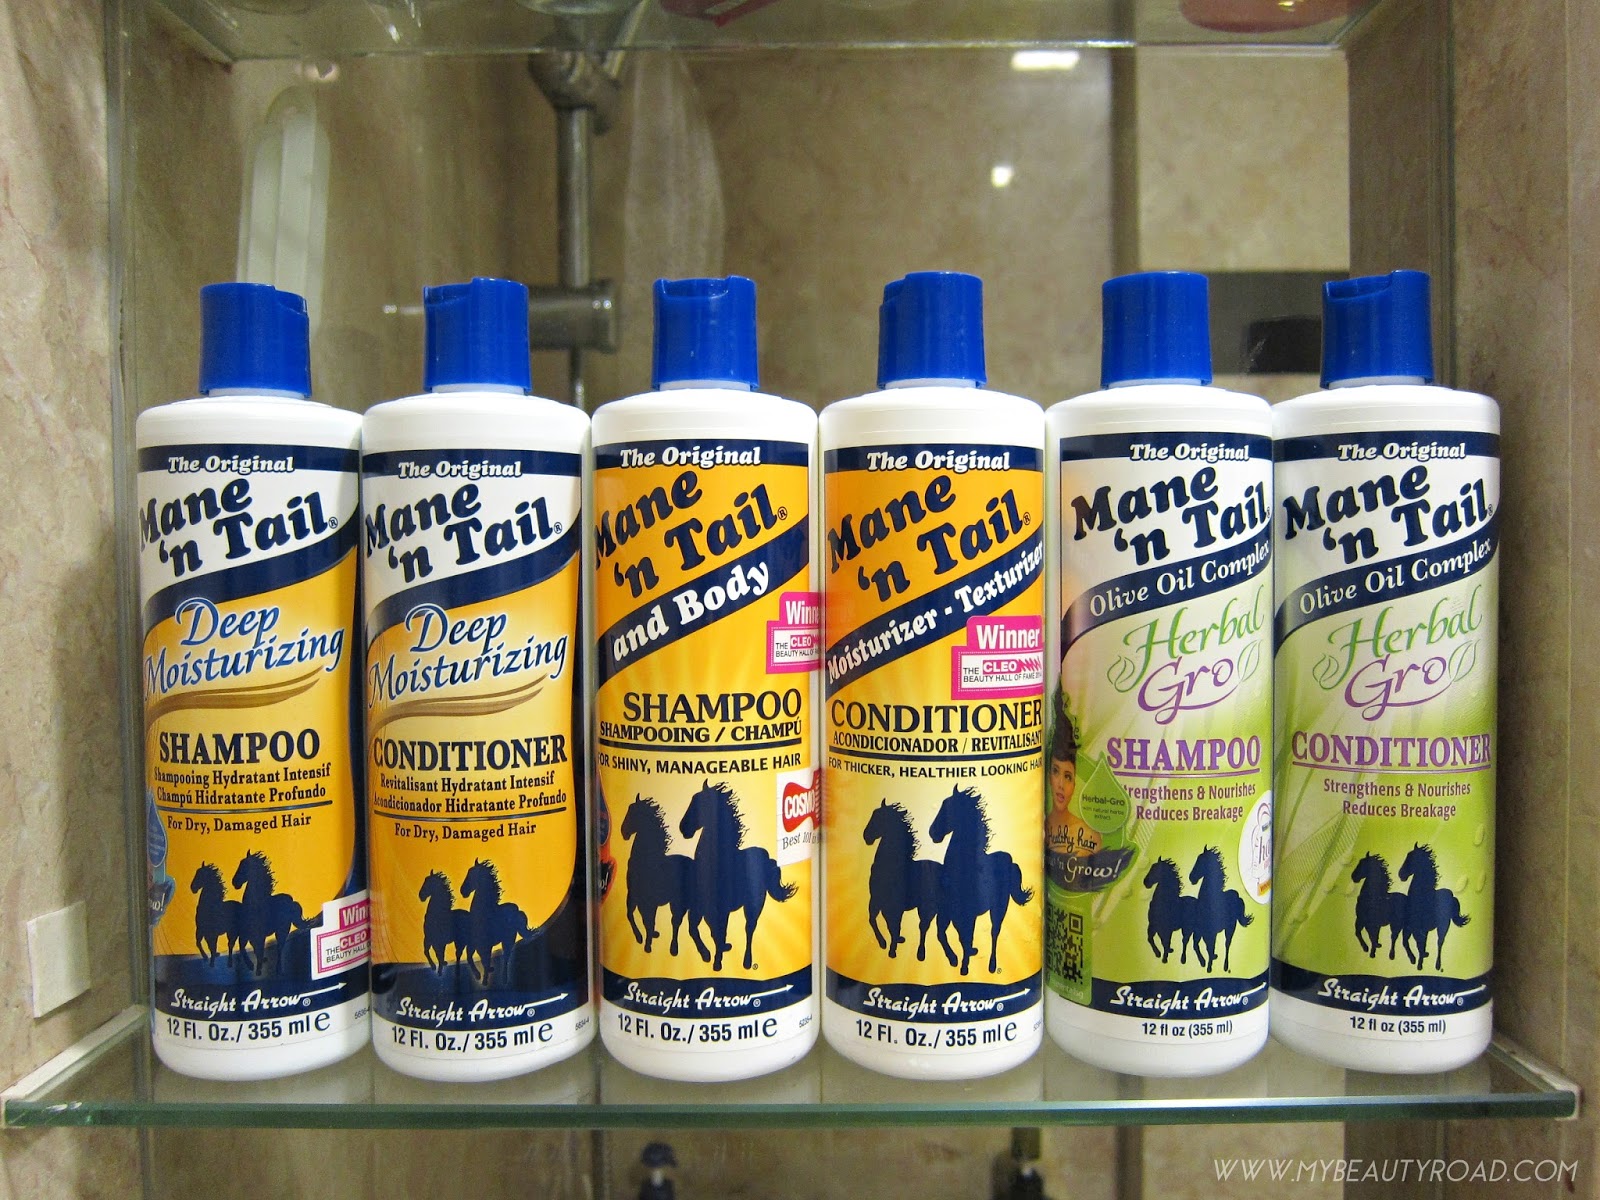 My Beauty Road Singapore Beauty Blog I Use Horse Shampoo For My